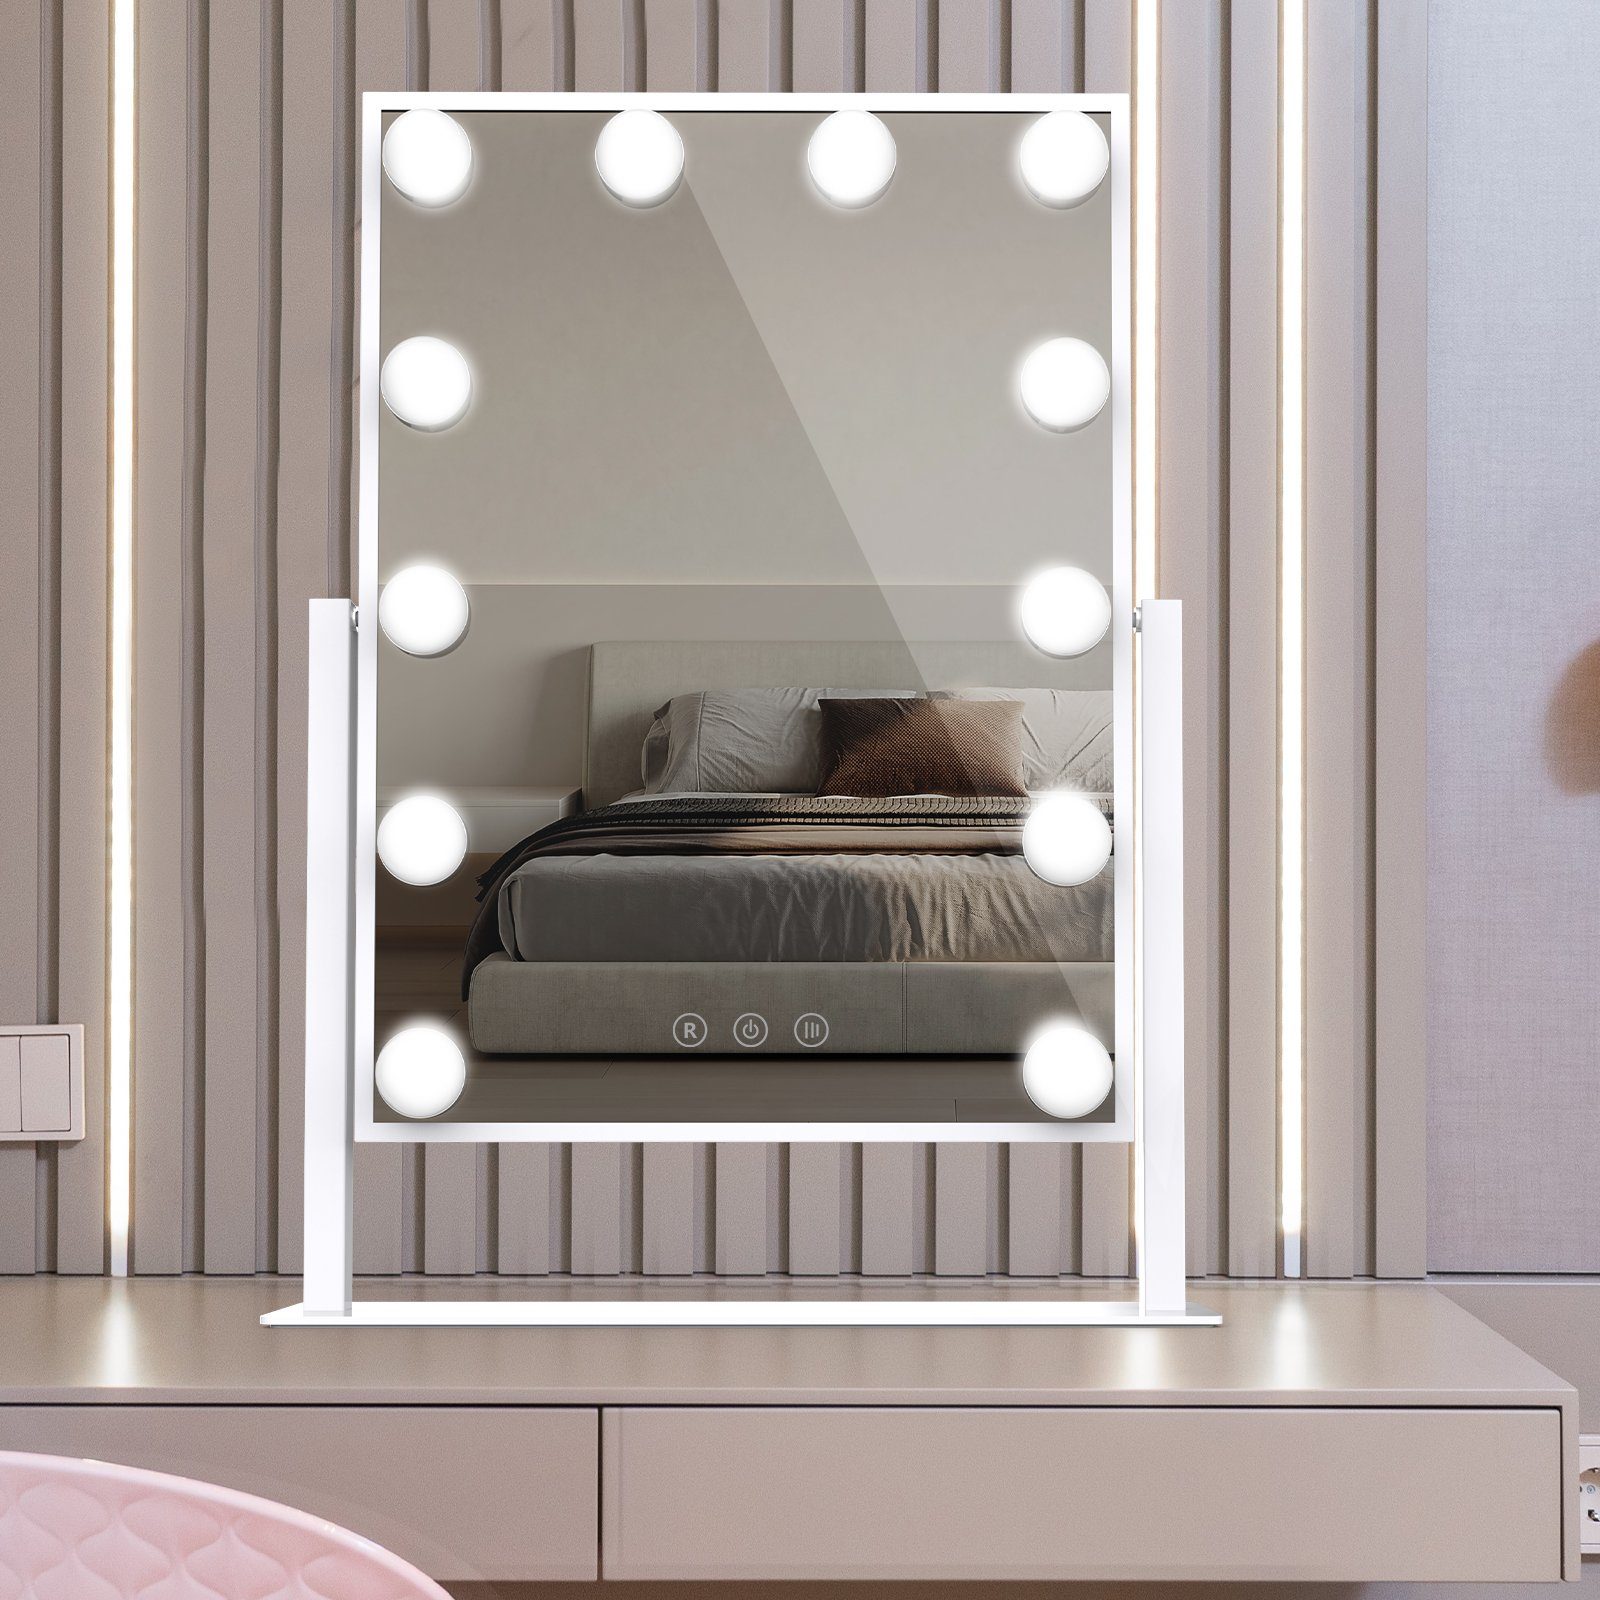 Hollywood-Spiegel Farblichter, mit 3 Schminkspiegel Kosmetikspiegel LED-Lampen (für Schlafzimmer, Smart 12 EU-Stecker), mit Aoucheni 360-Grad-Drehung Touch,